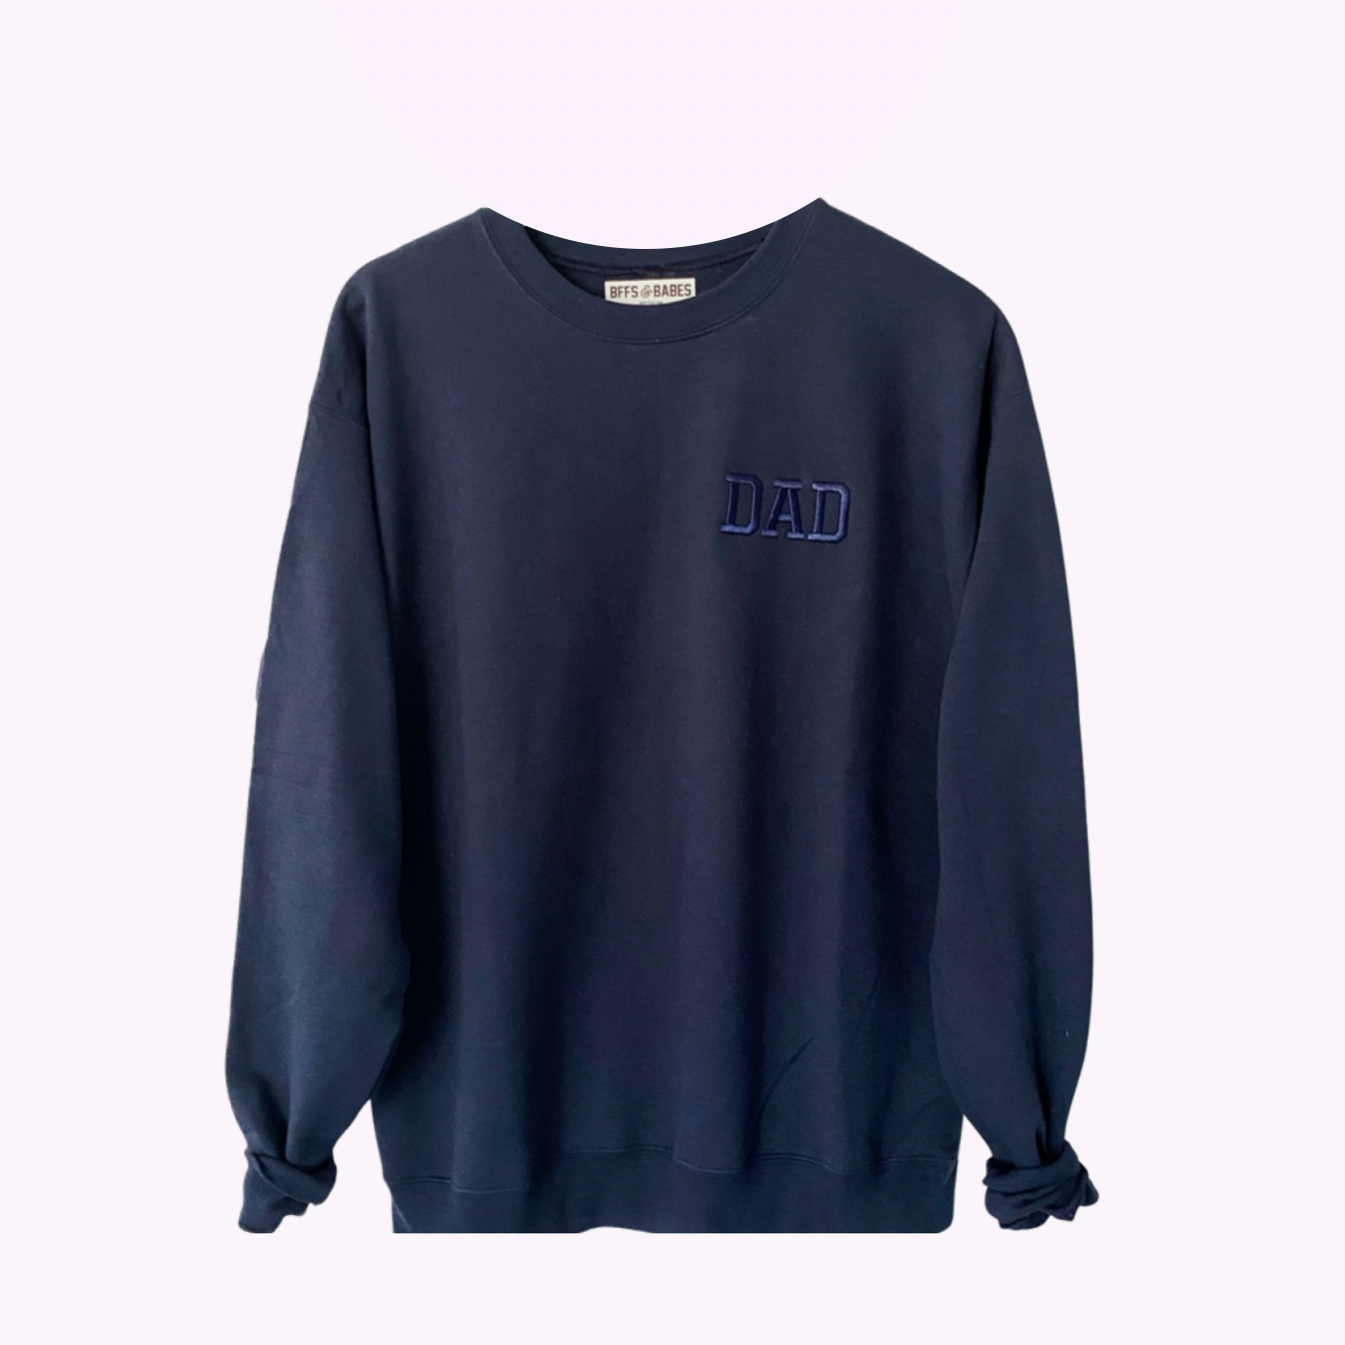 DAD STITCH ♡ embroidered navy/navy dad sweatshirt